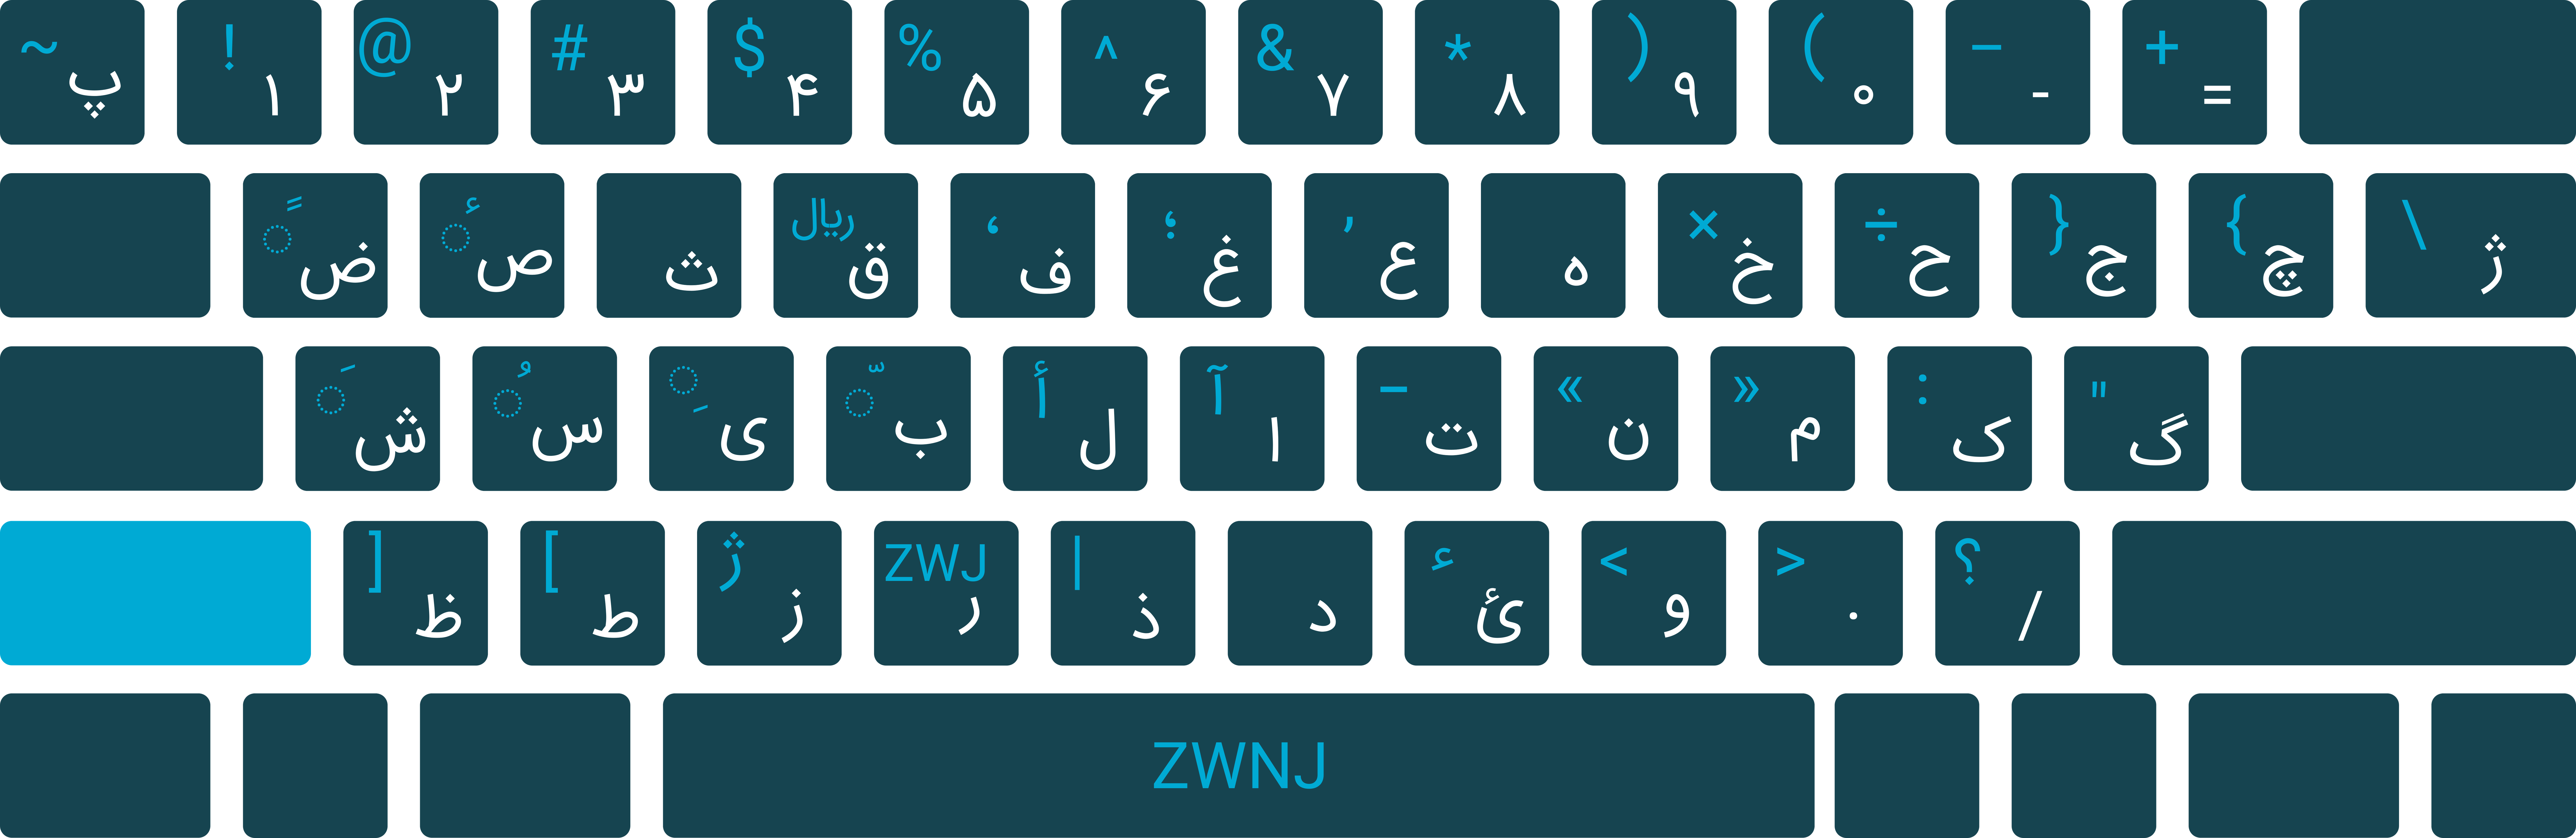 persian standard keyboard fir linux